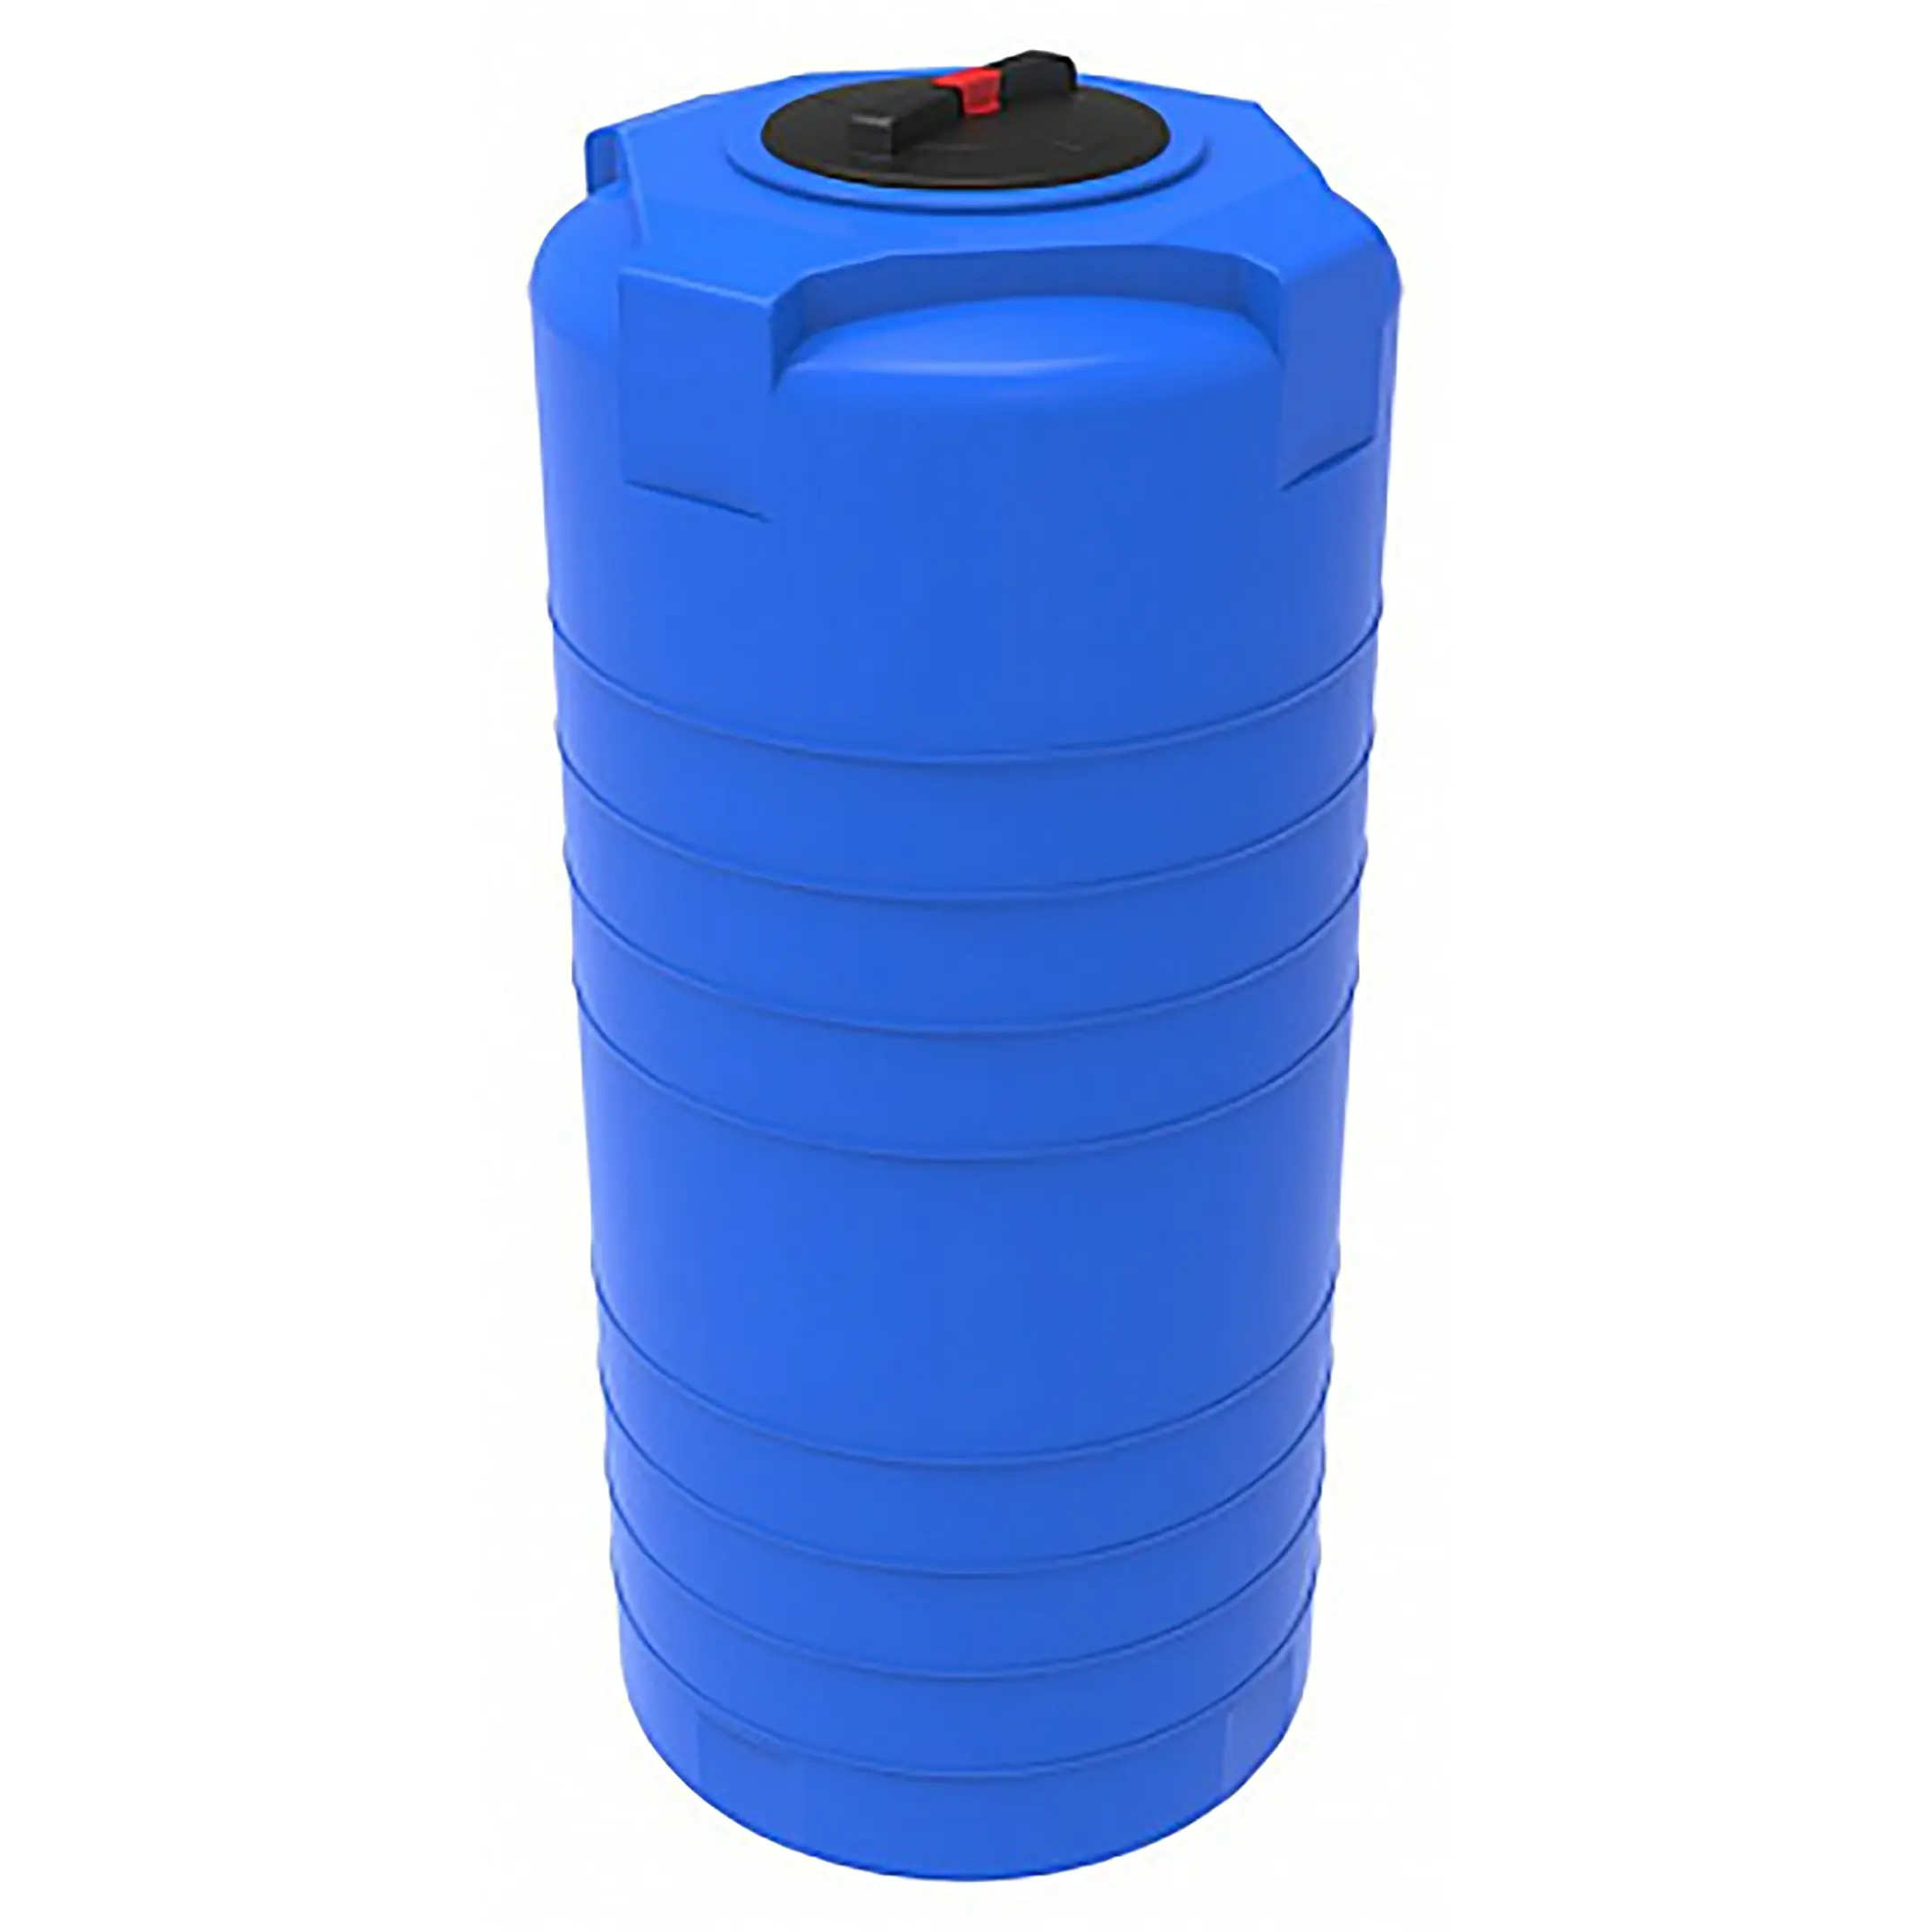 Бак для воды 200л. Емкость ЭКОПРОМ L 500 синяя. ЭКОПРОМ Т 500 бак 500л для воды пластиковый с крышкой 107.0500.601.0. Бак для воды ЭКОПРОМ T-200. Емкость ЭКОПРОМ S 750 литров.